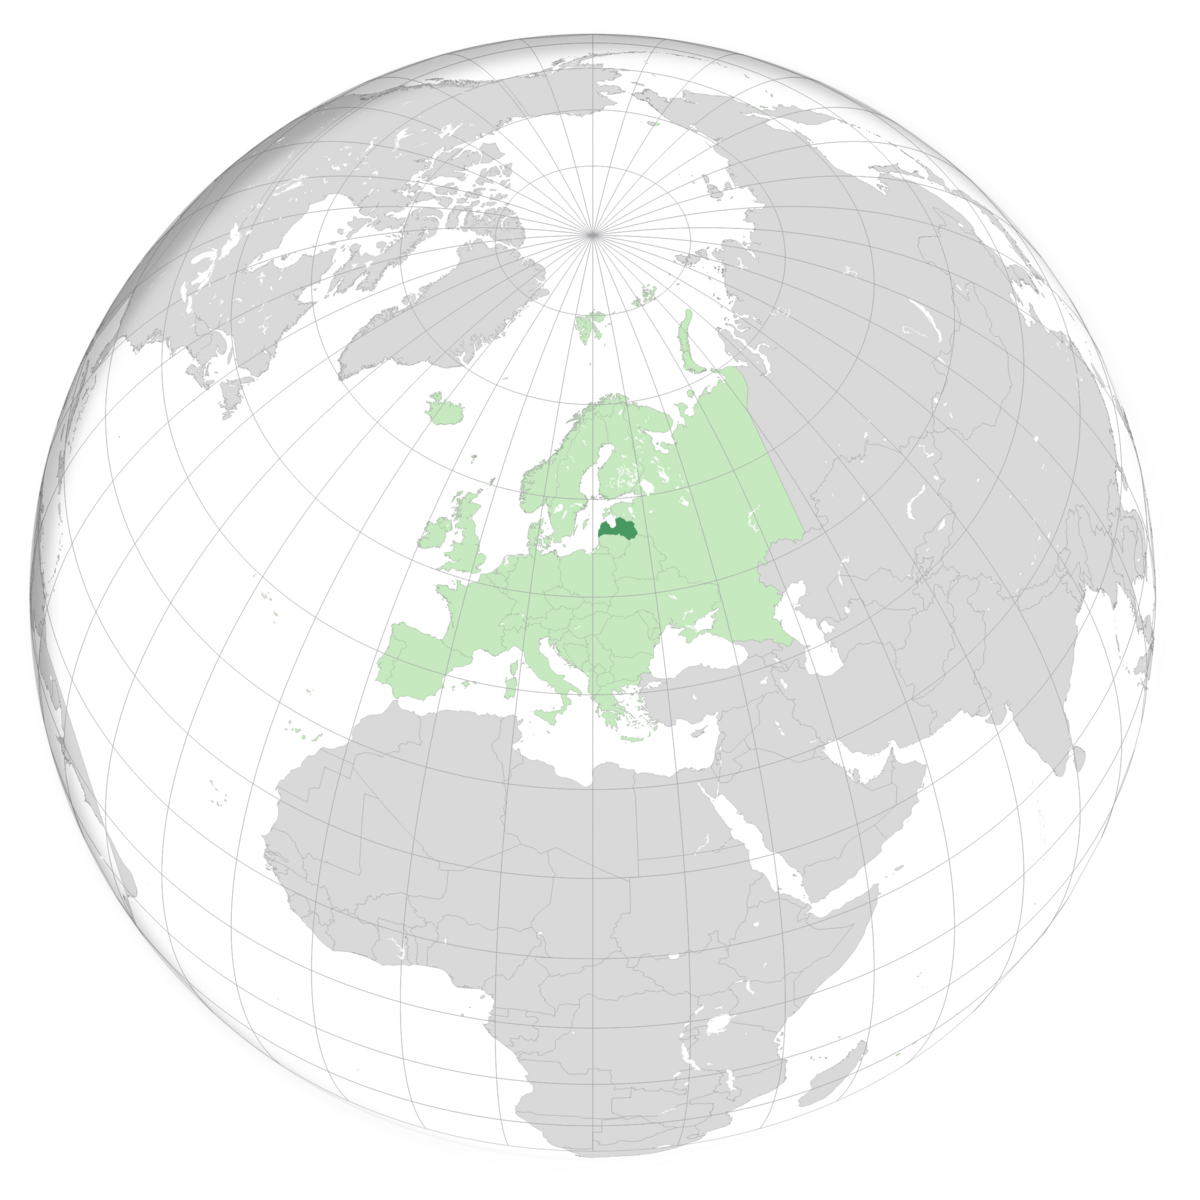 plassering av Latvia på jordkloden. Kart